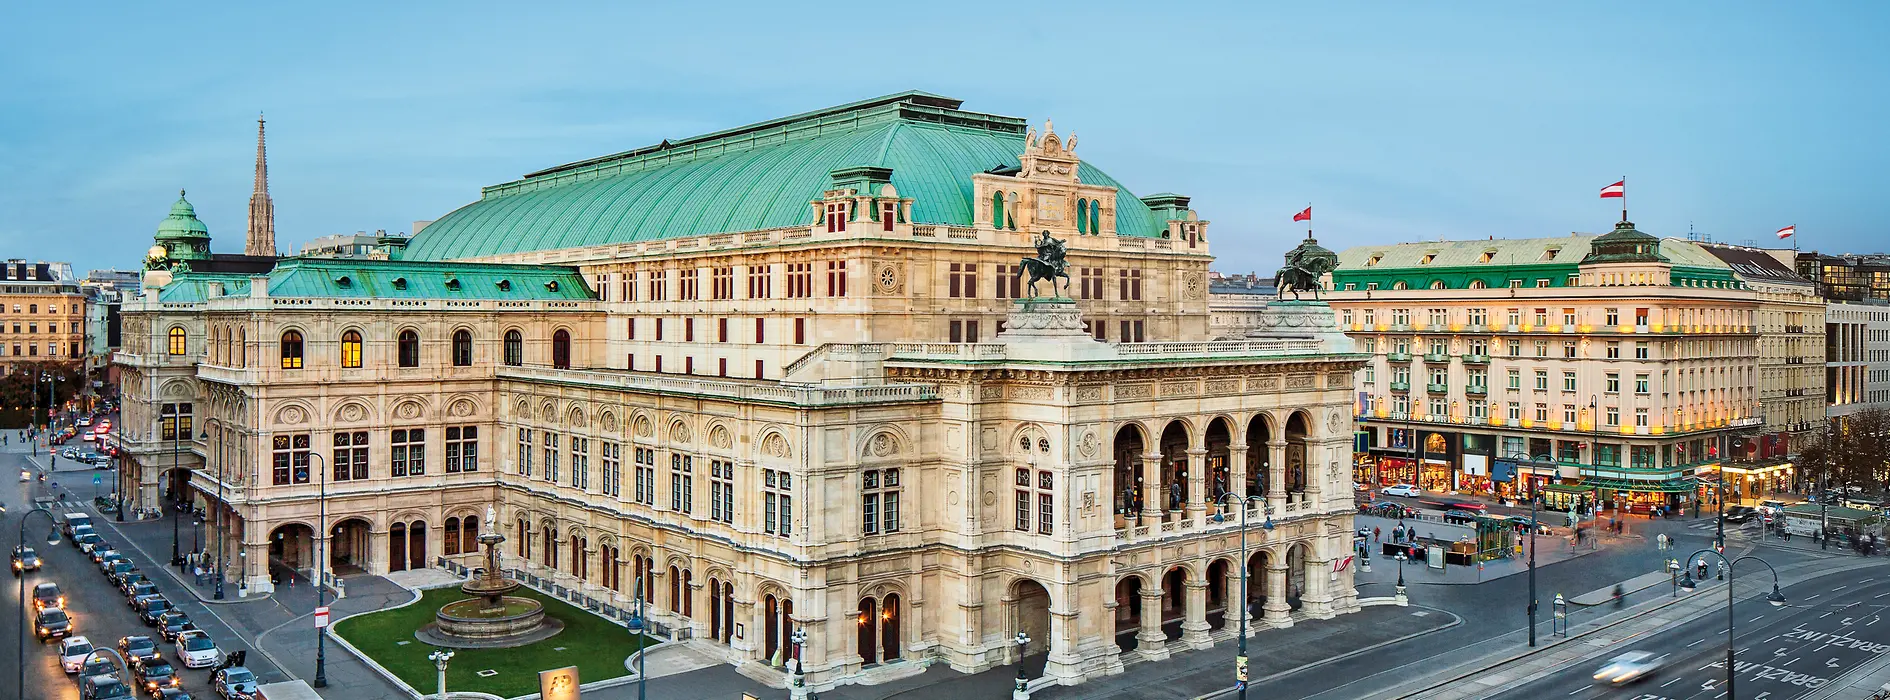 ウィーン国立オペラ座